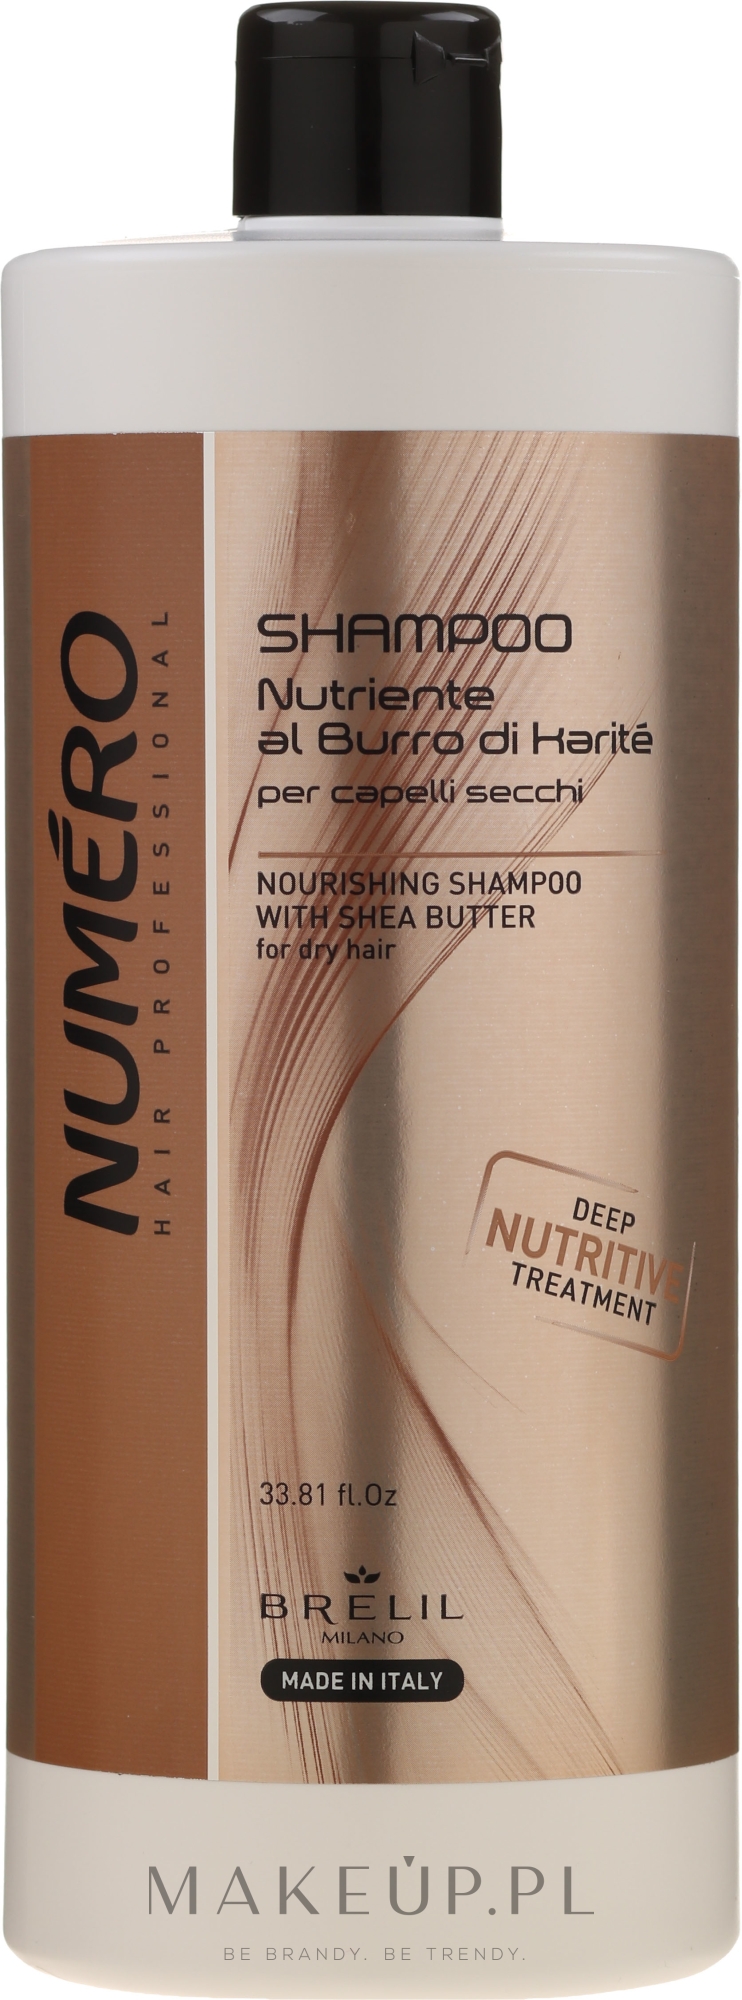 Odżywczy szampon z masłem shea do włosów suchych - Brelil Numero Nourishing Shampoo With Shea Butter — Zdjęcie 1000 ml